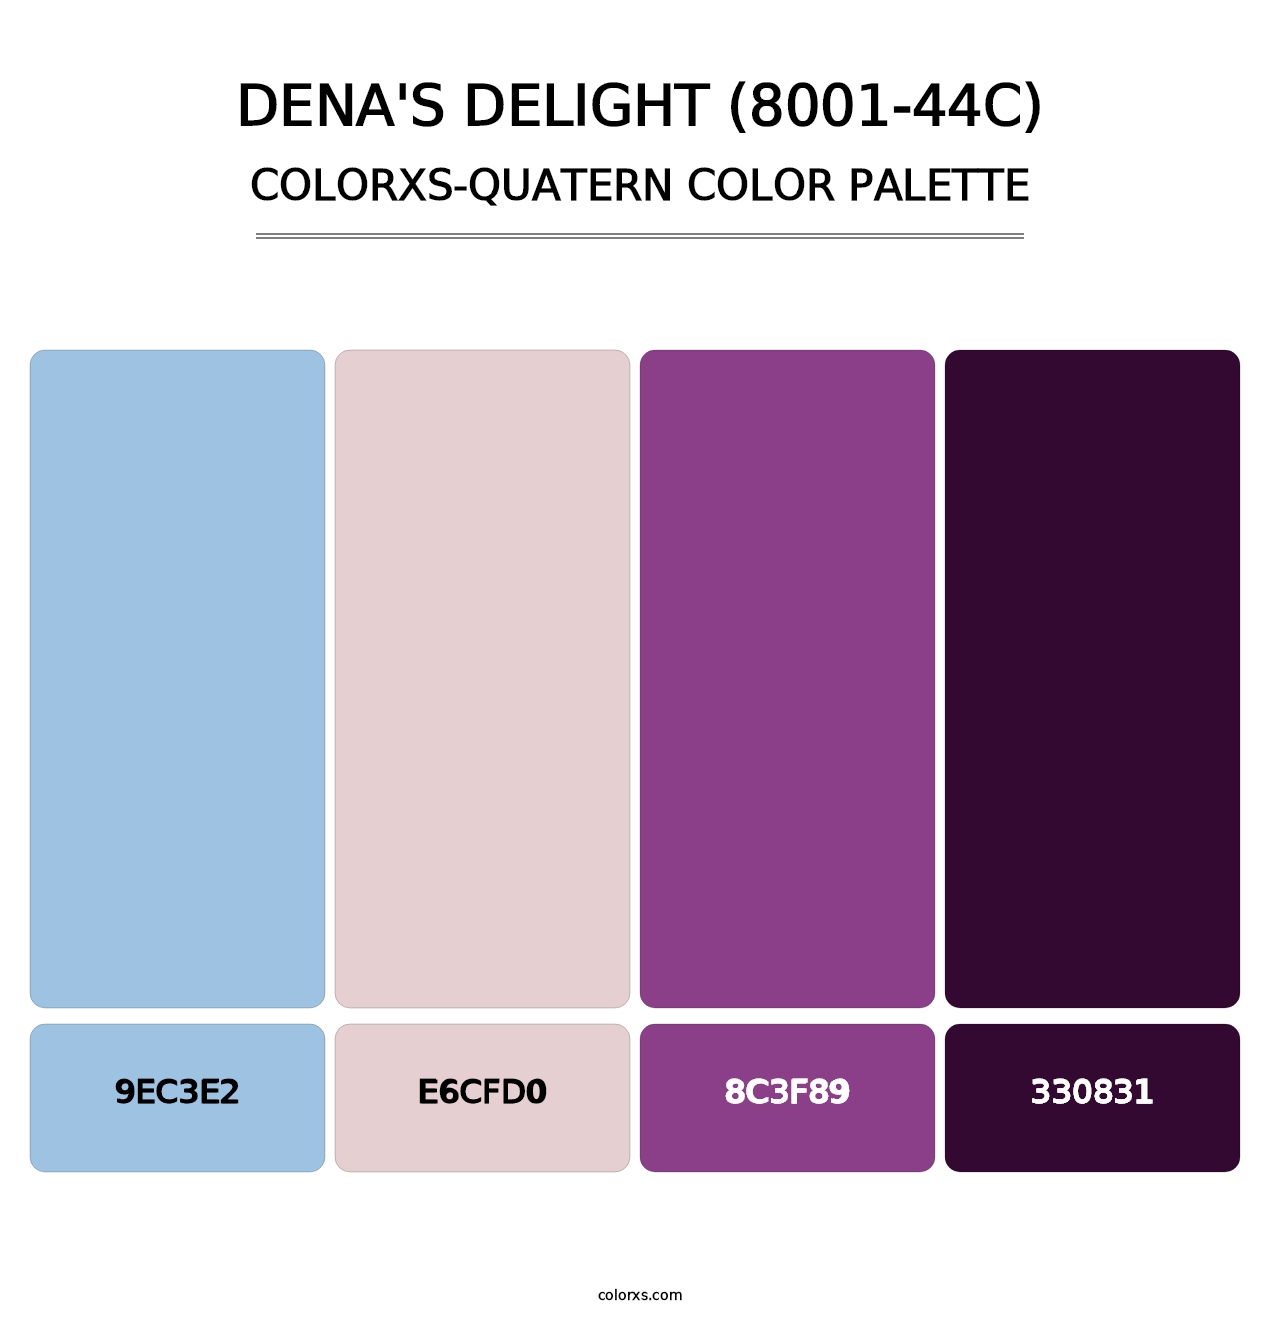 Dena's Delight (8001-44C) - Colorxs Quatern Palette